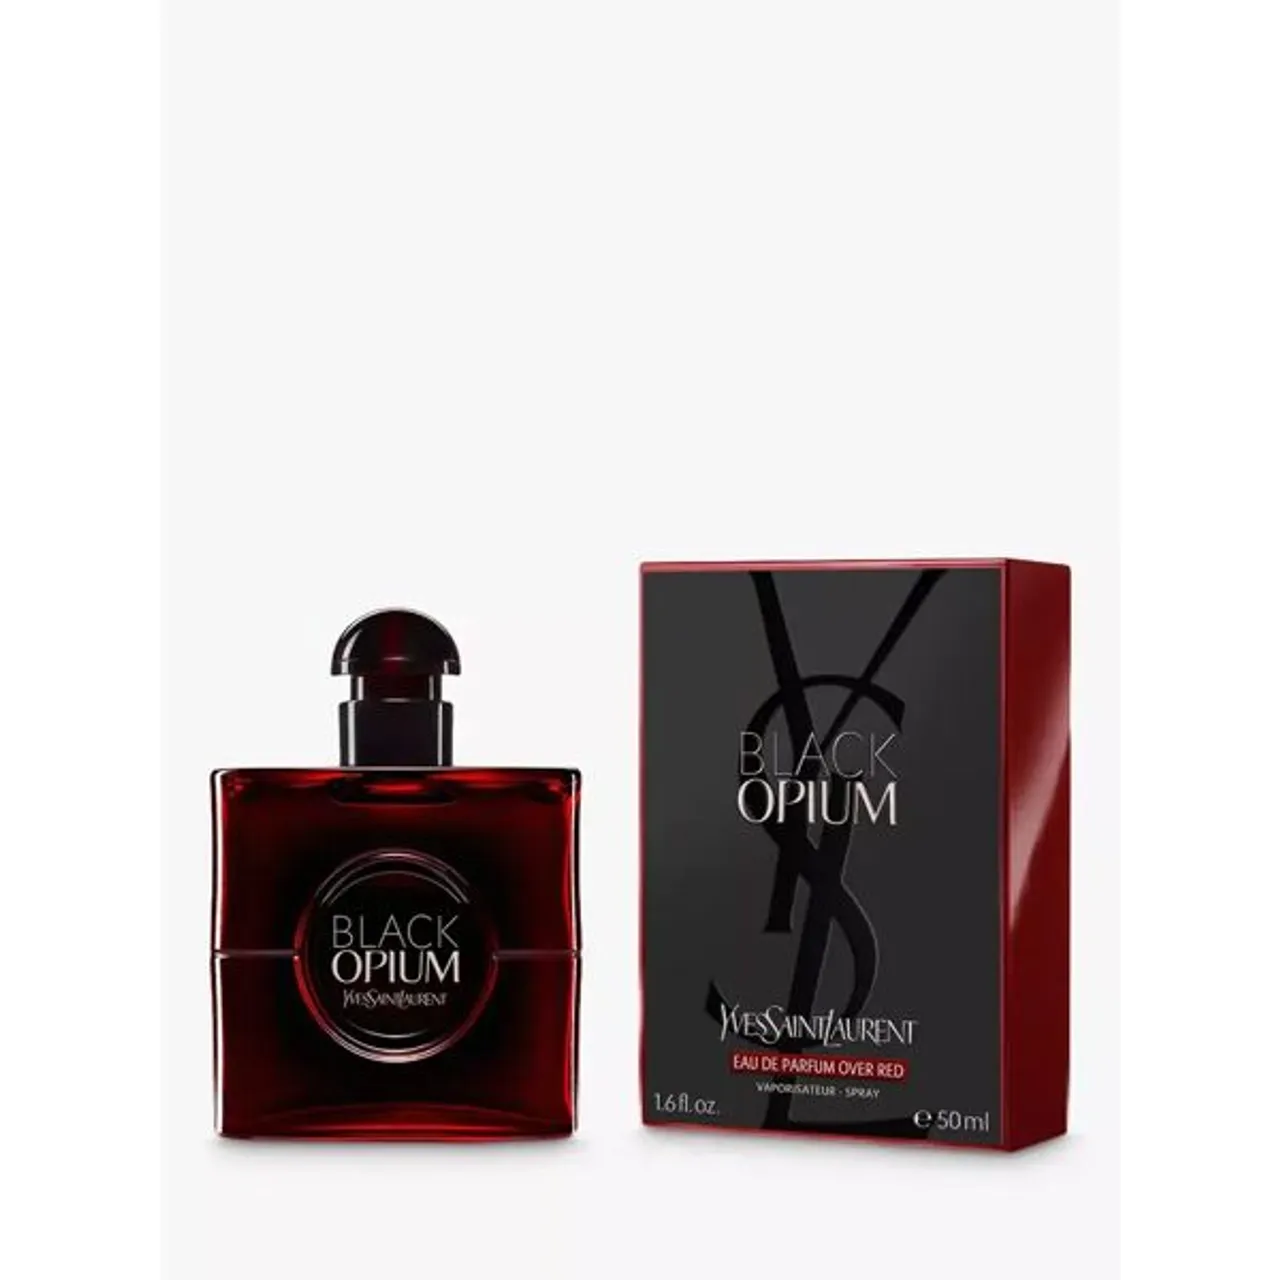 Yves Saint Laurent Black Opium Eau de Parfum Over Red - Female - Size: 50ml